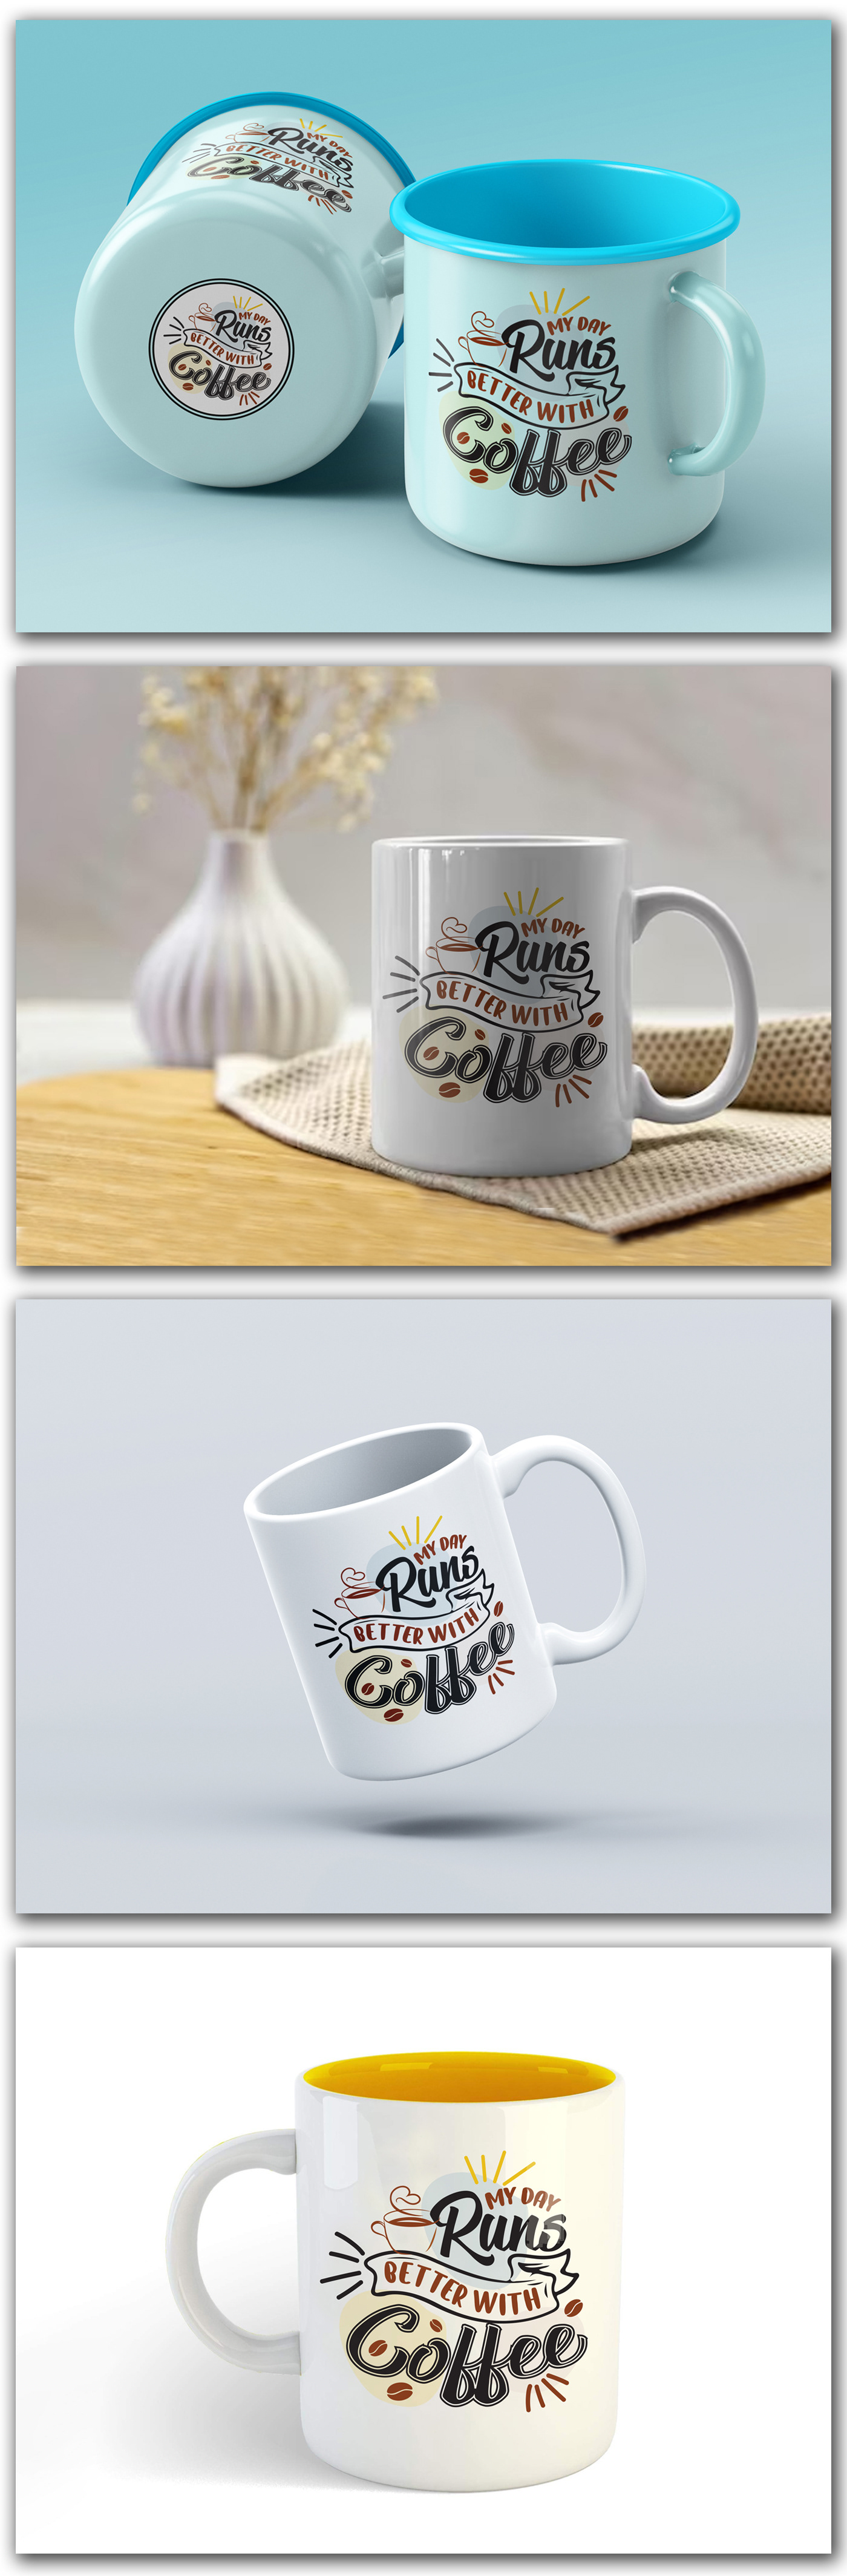 mug design, coffee mug design, mug design ideas, custom mug design, mug design template, coffee mug 